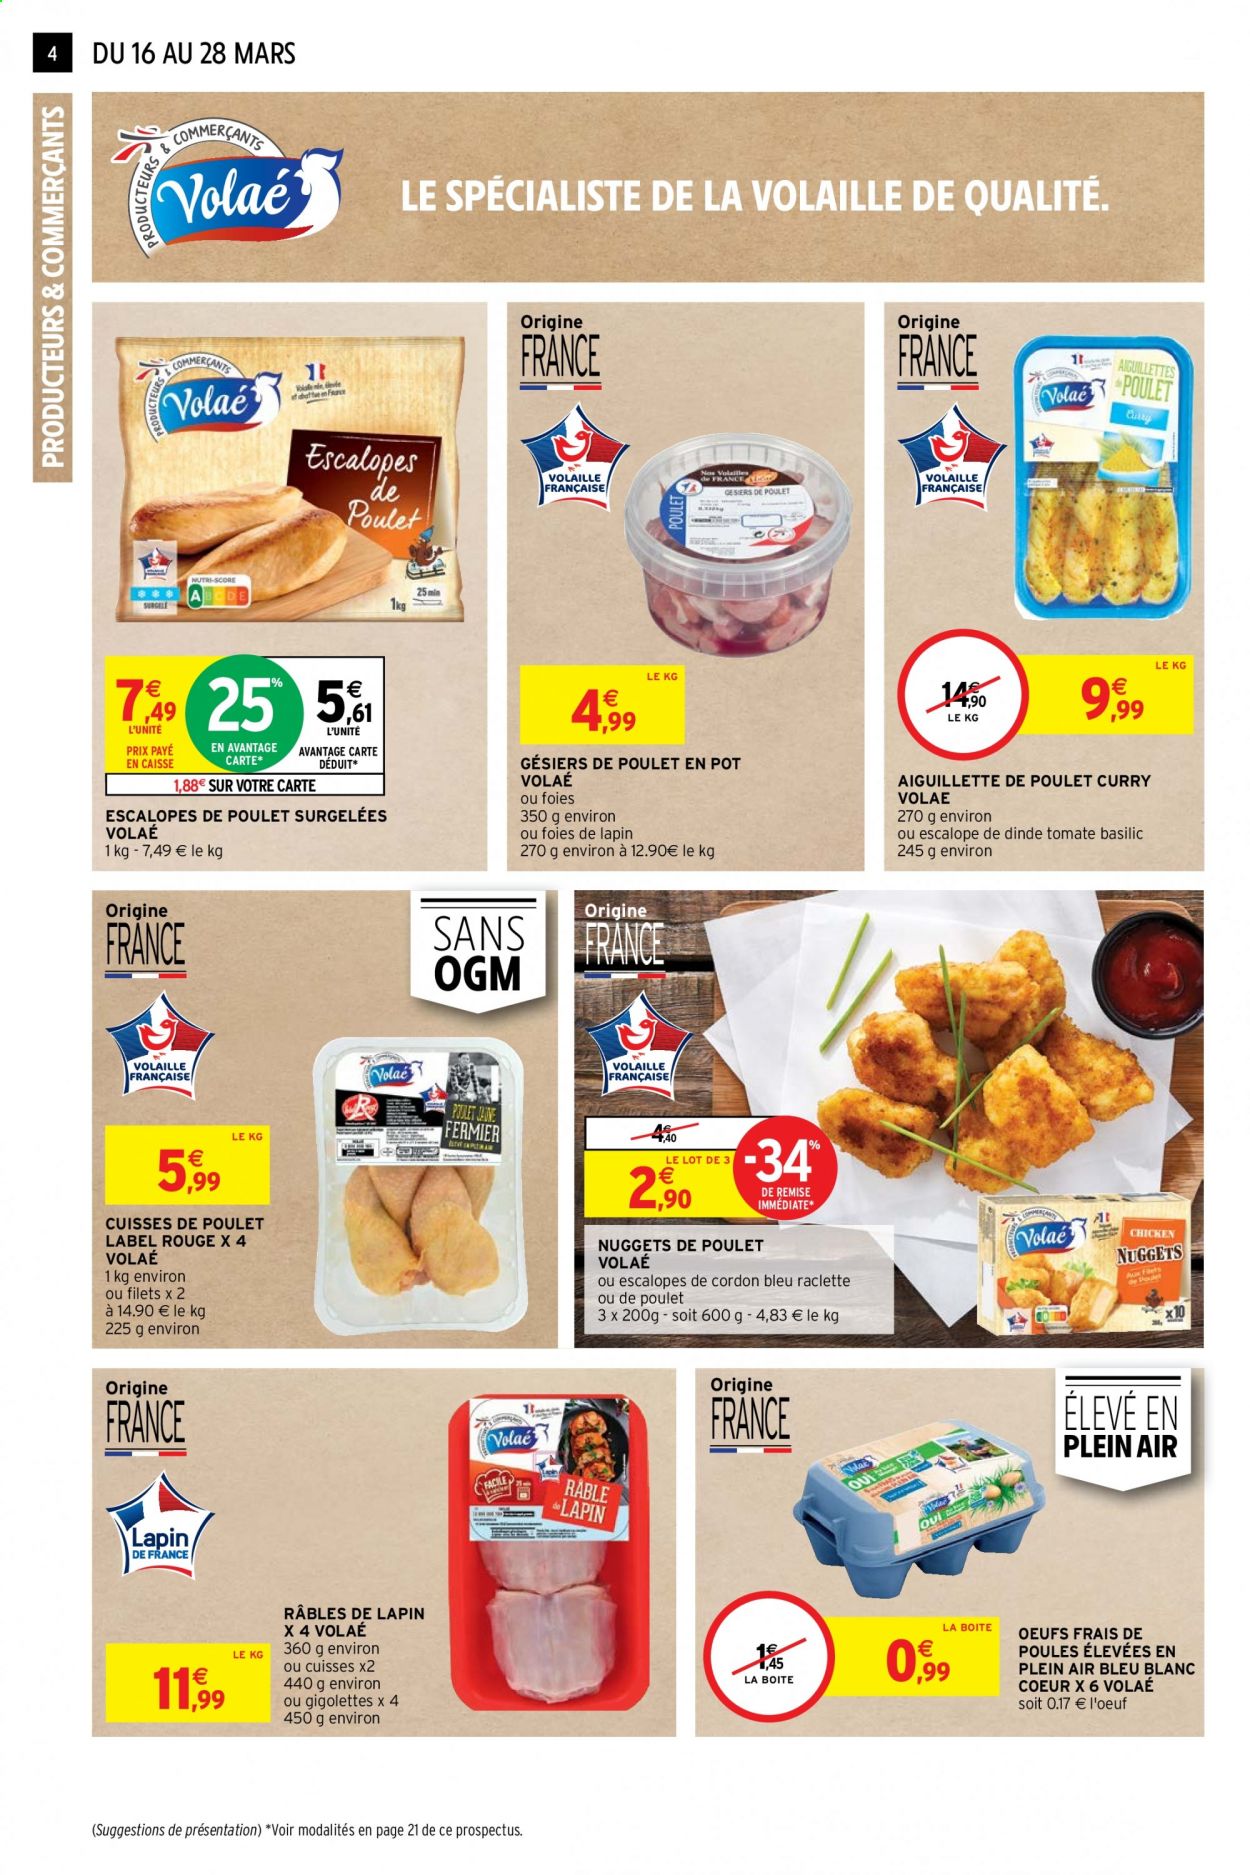 thumbnail - Catalogue Intermarché Hyper - 16/03/2021 - 28/03/2021 - Produits soldés - escalope, gésiers, cuisses de poulet, viande de poulet, escalope de dinde, viande de lapin, cordon bleu, nuggets de poulet, La Raclette, œufs. Page 4.